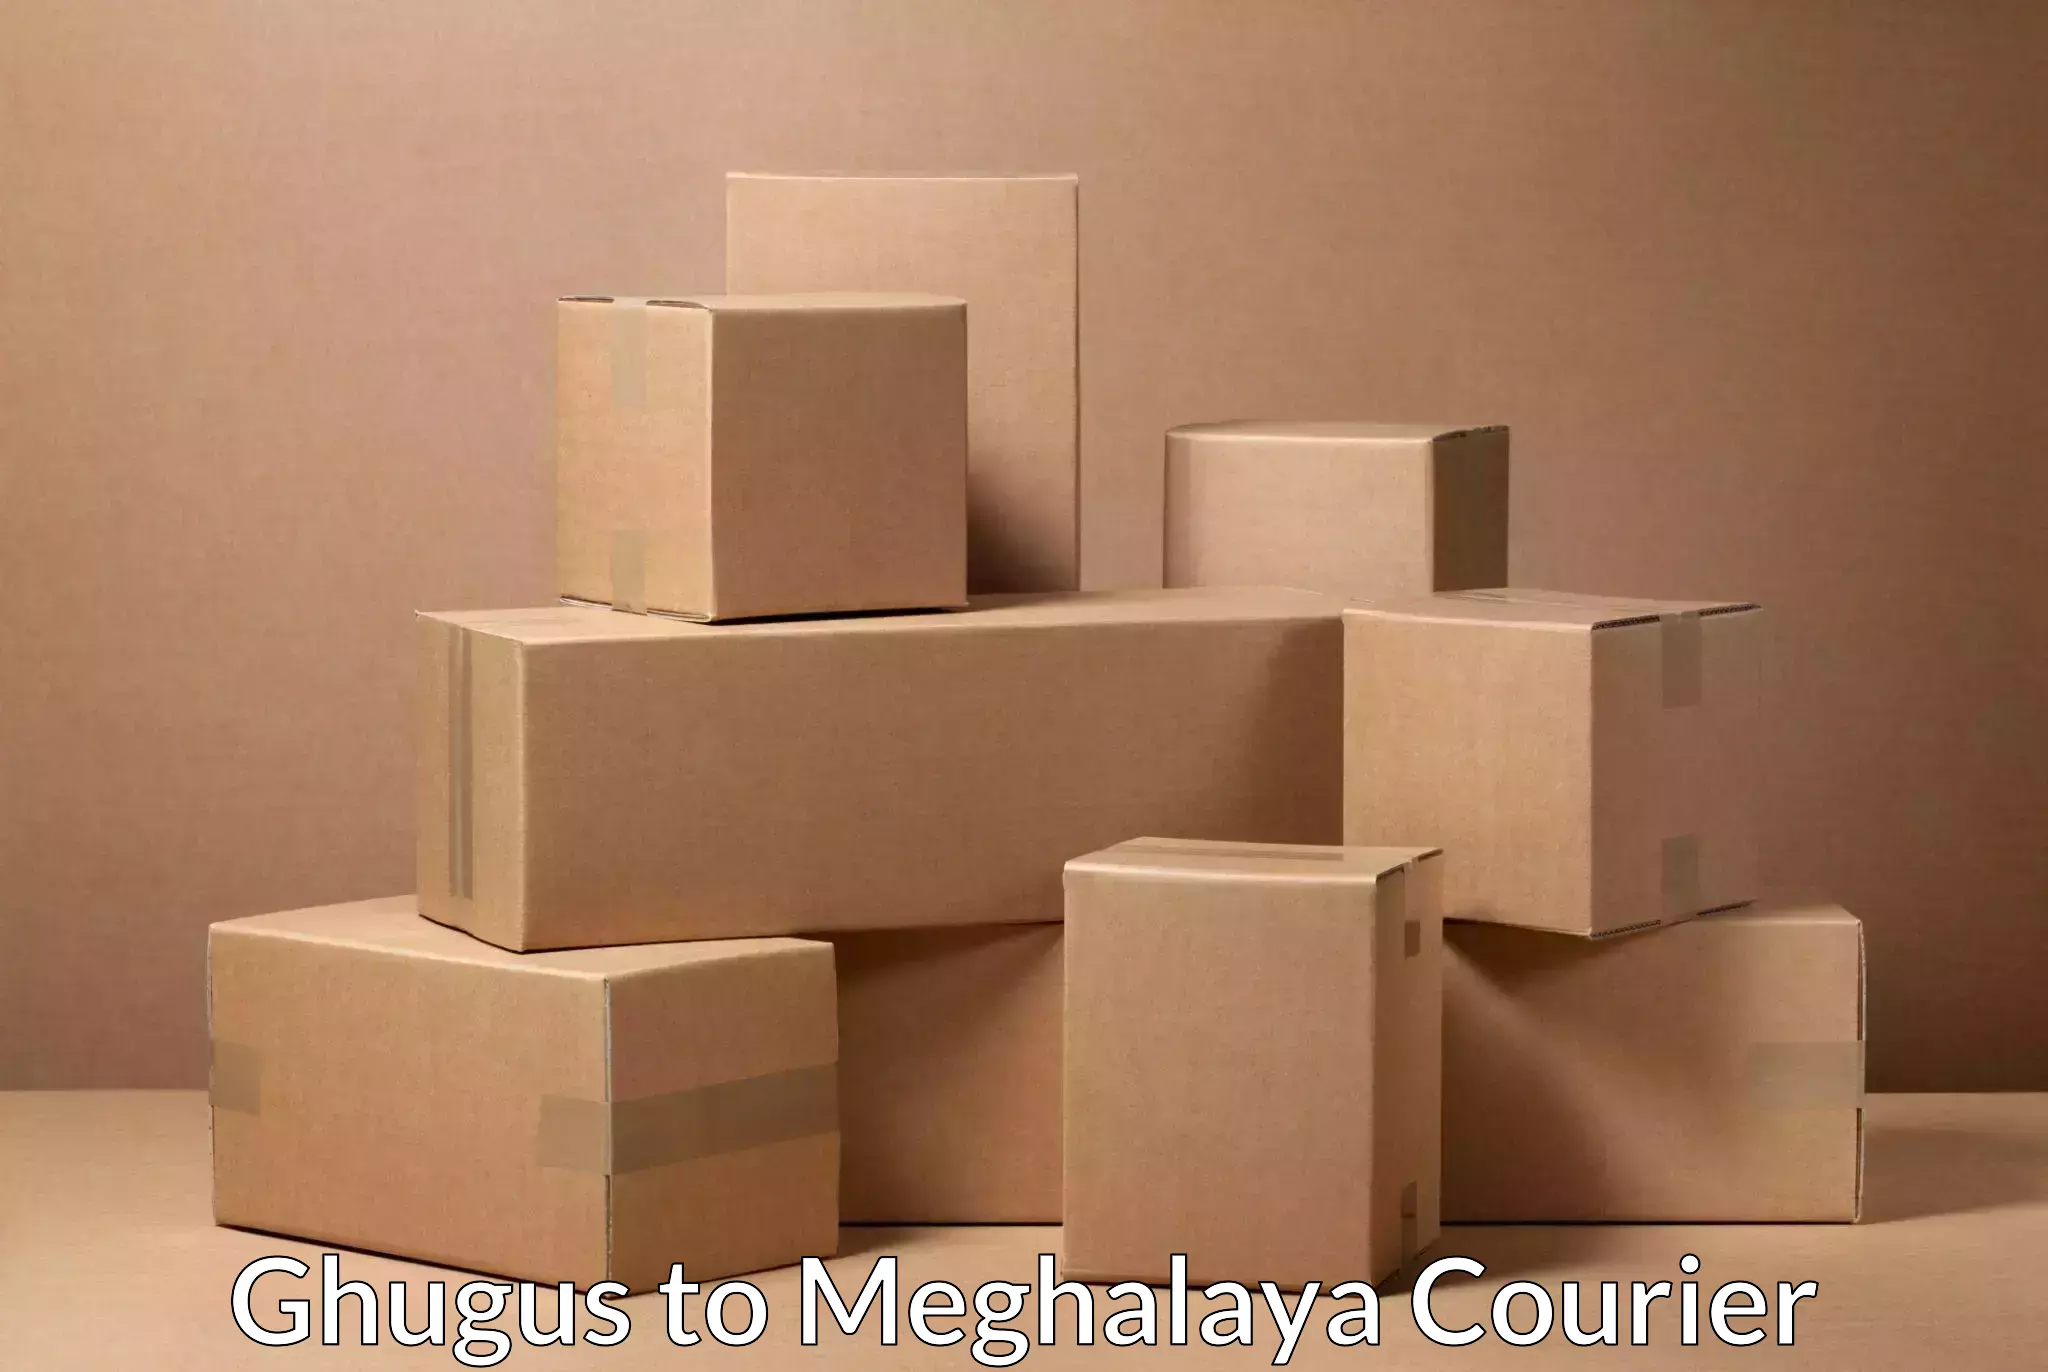 Easy return solutions Ghugus to Meghalaya